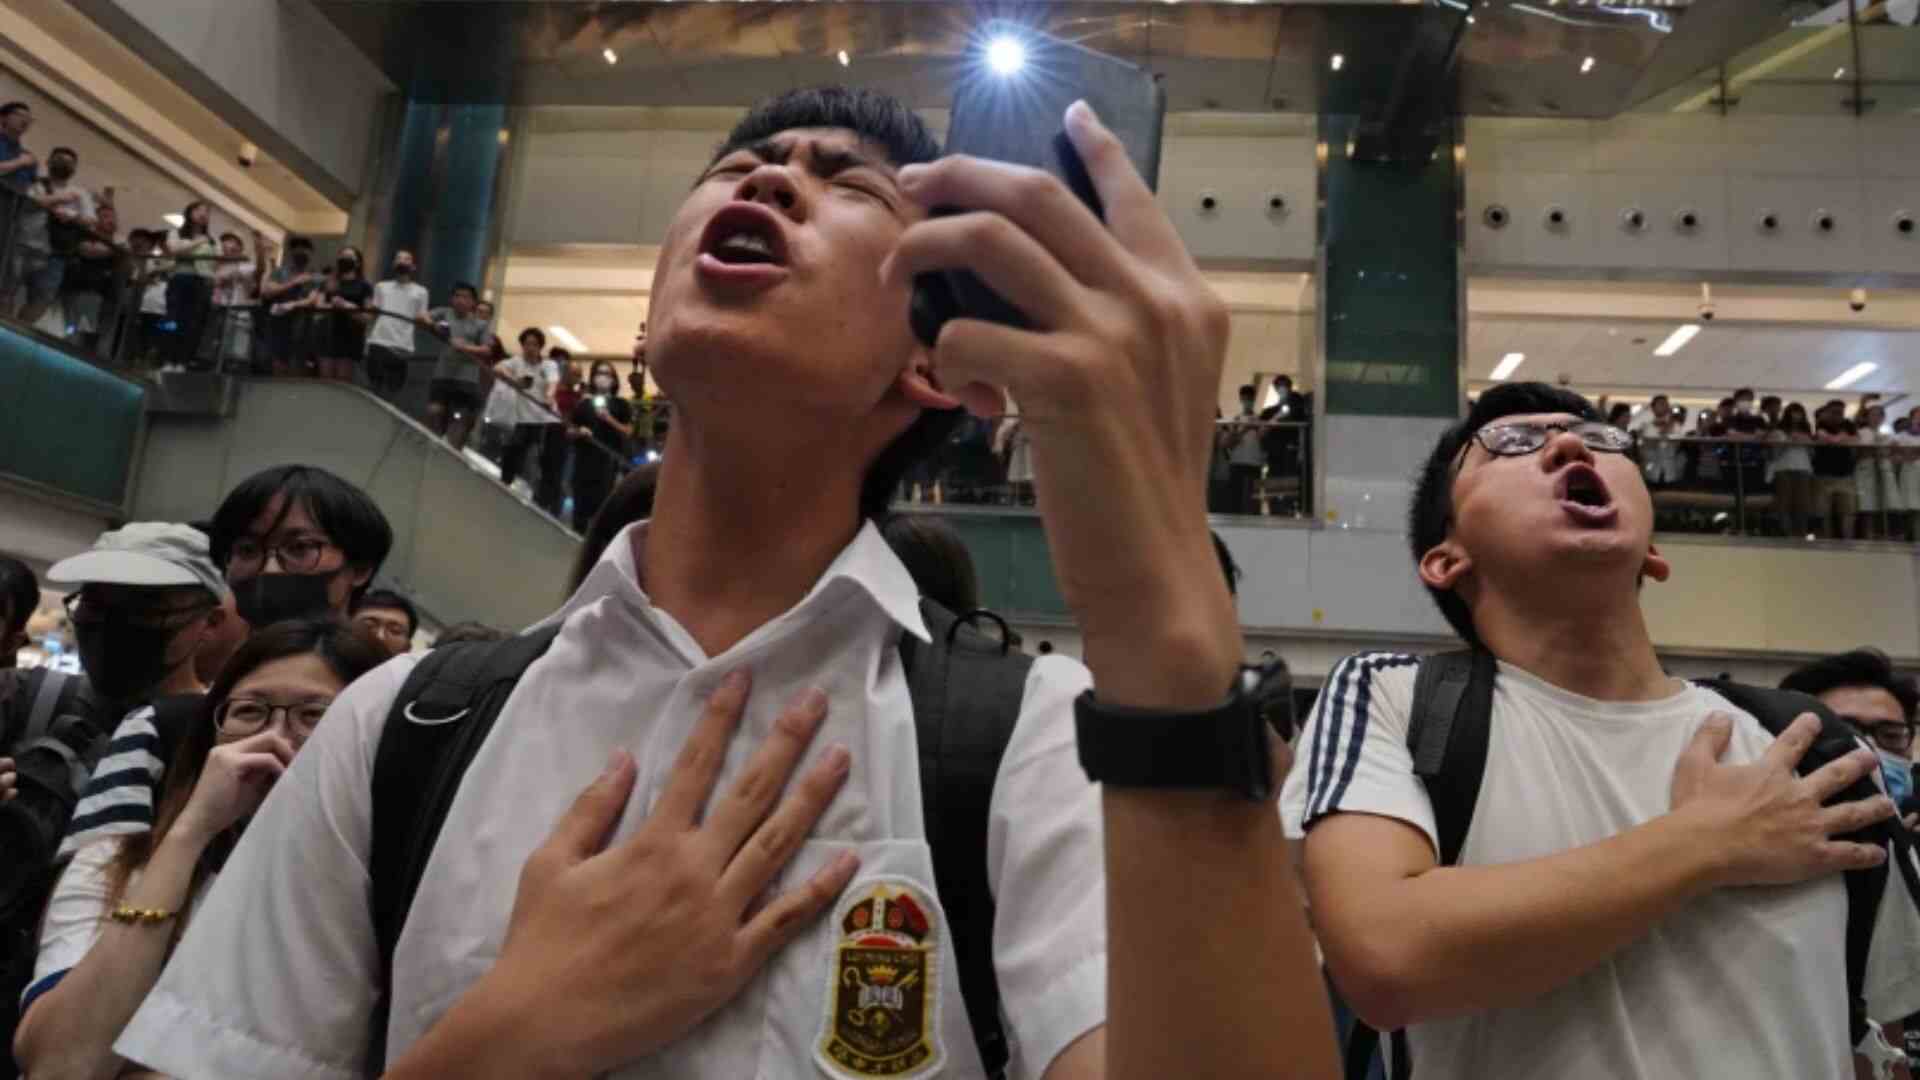 Students Singing 'Glory To Hong Kong'